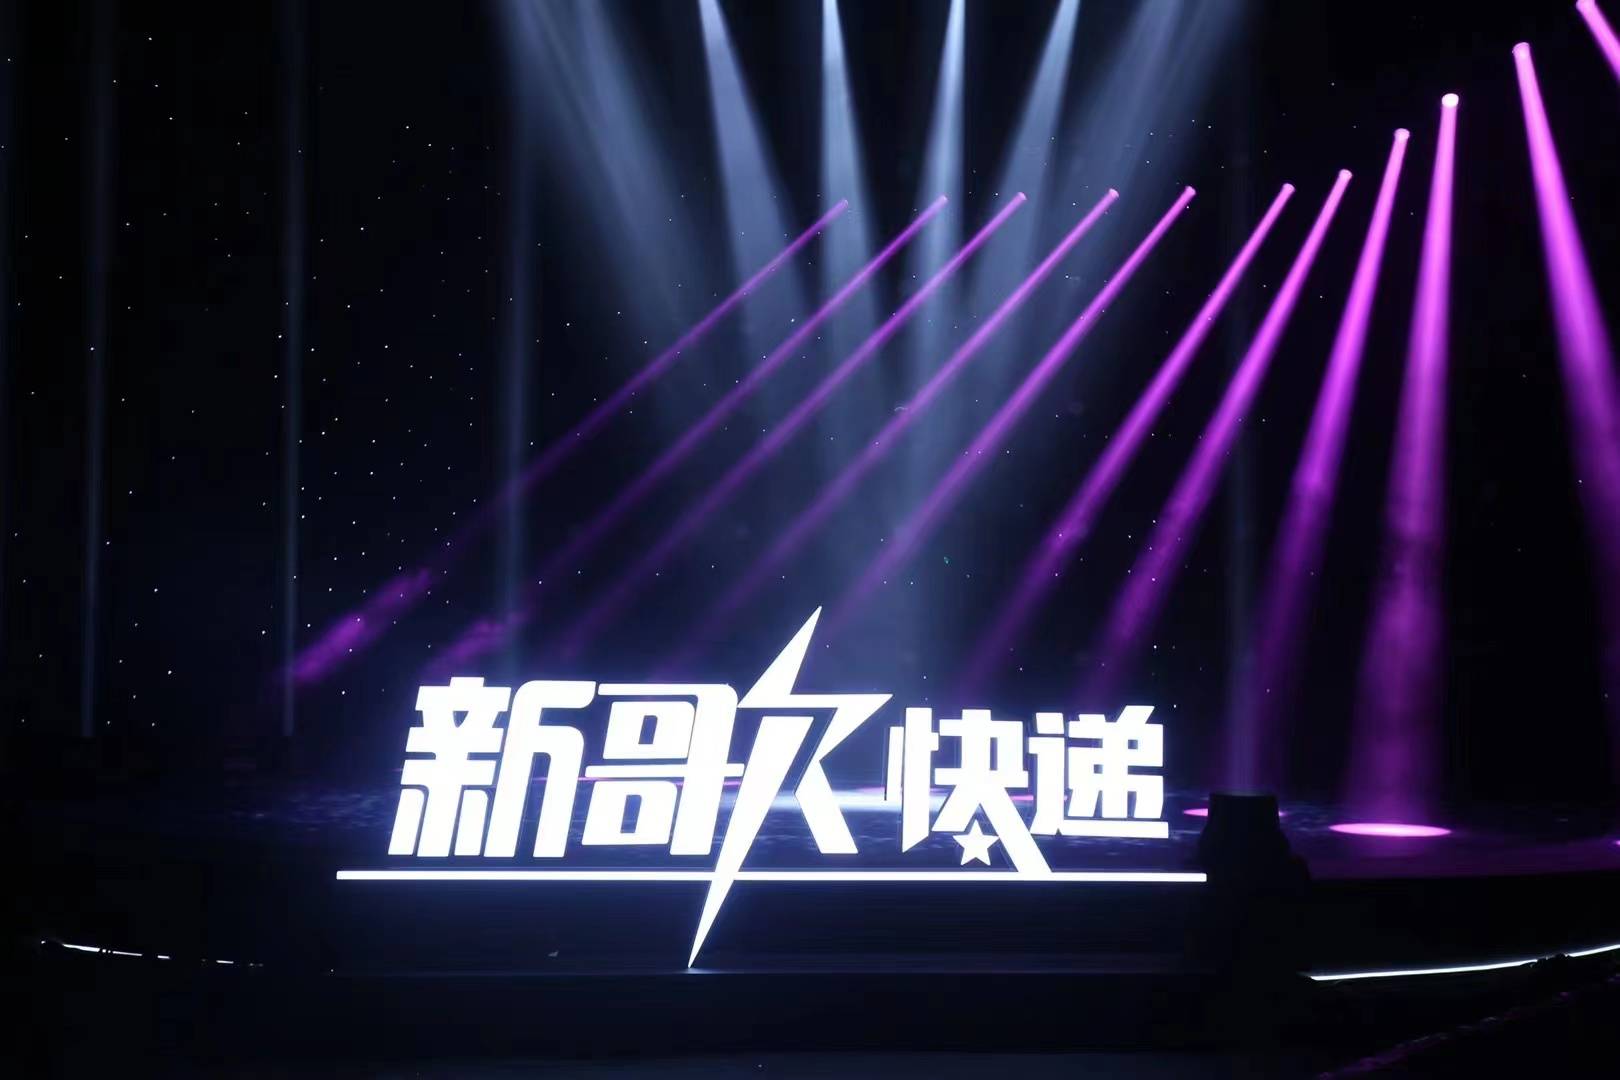 《新歌快递》第一季收官之站将于8月6日在北京录制